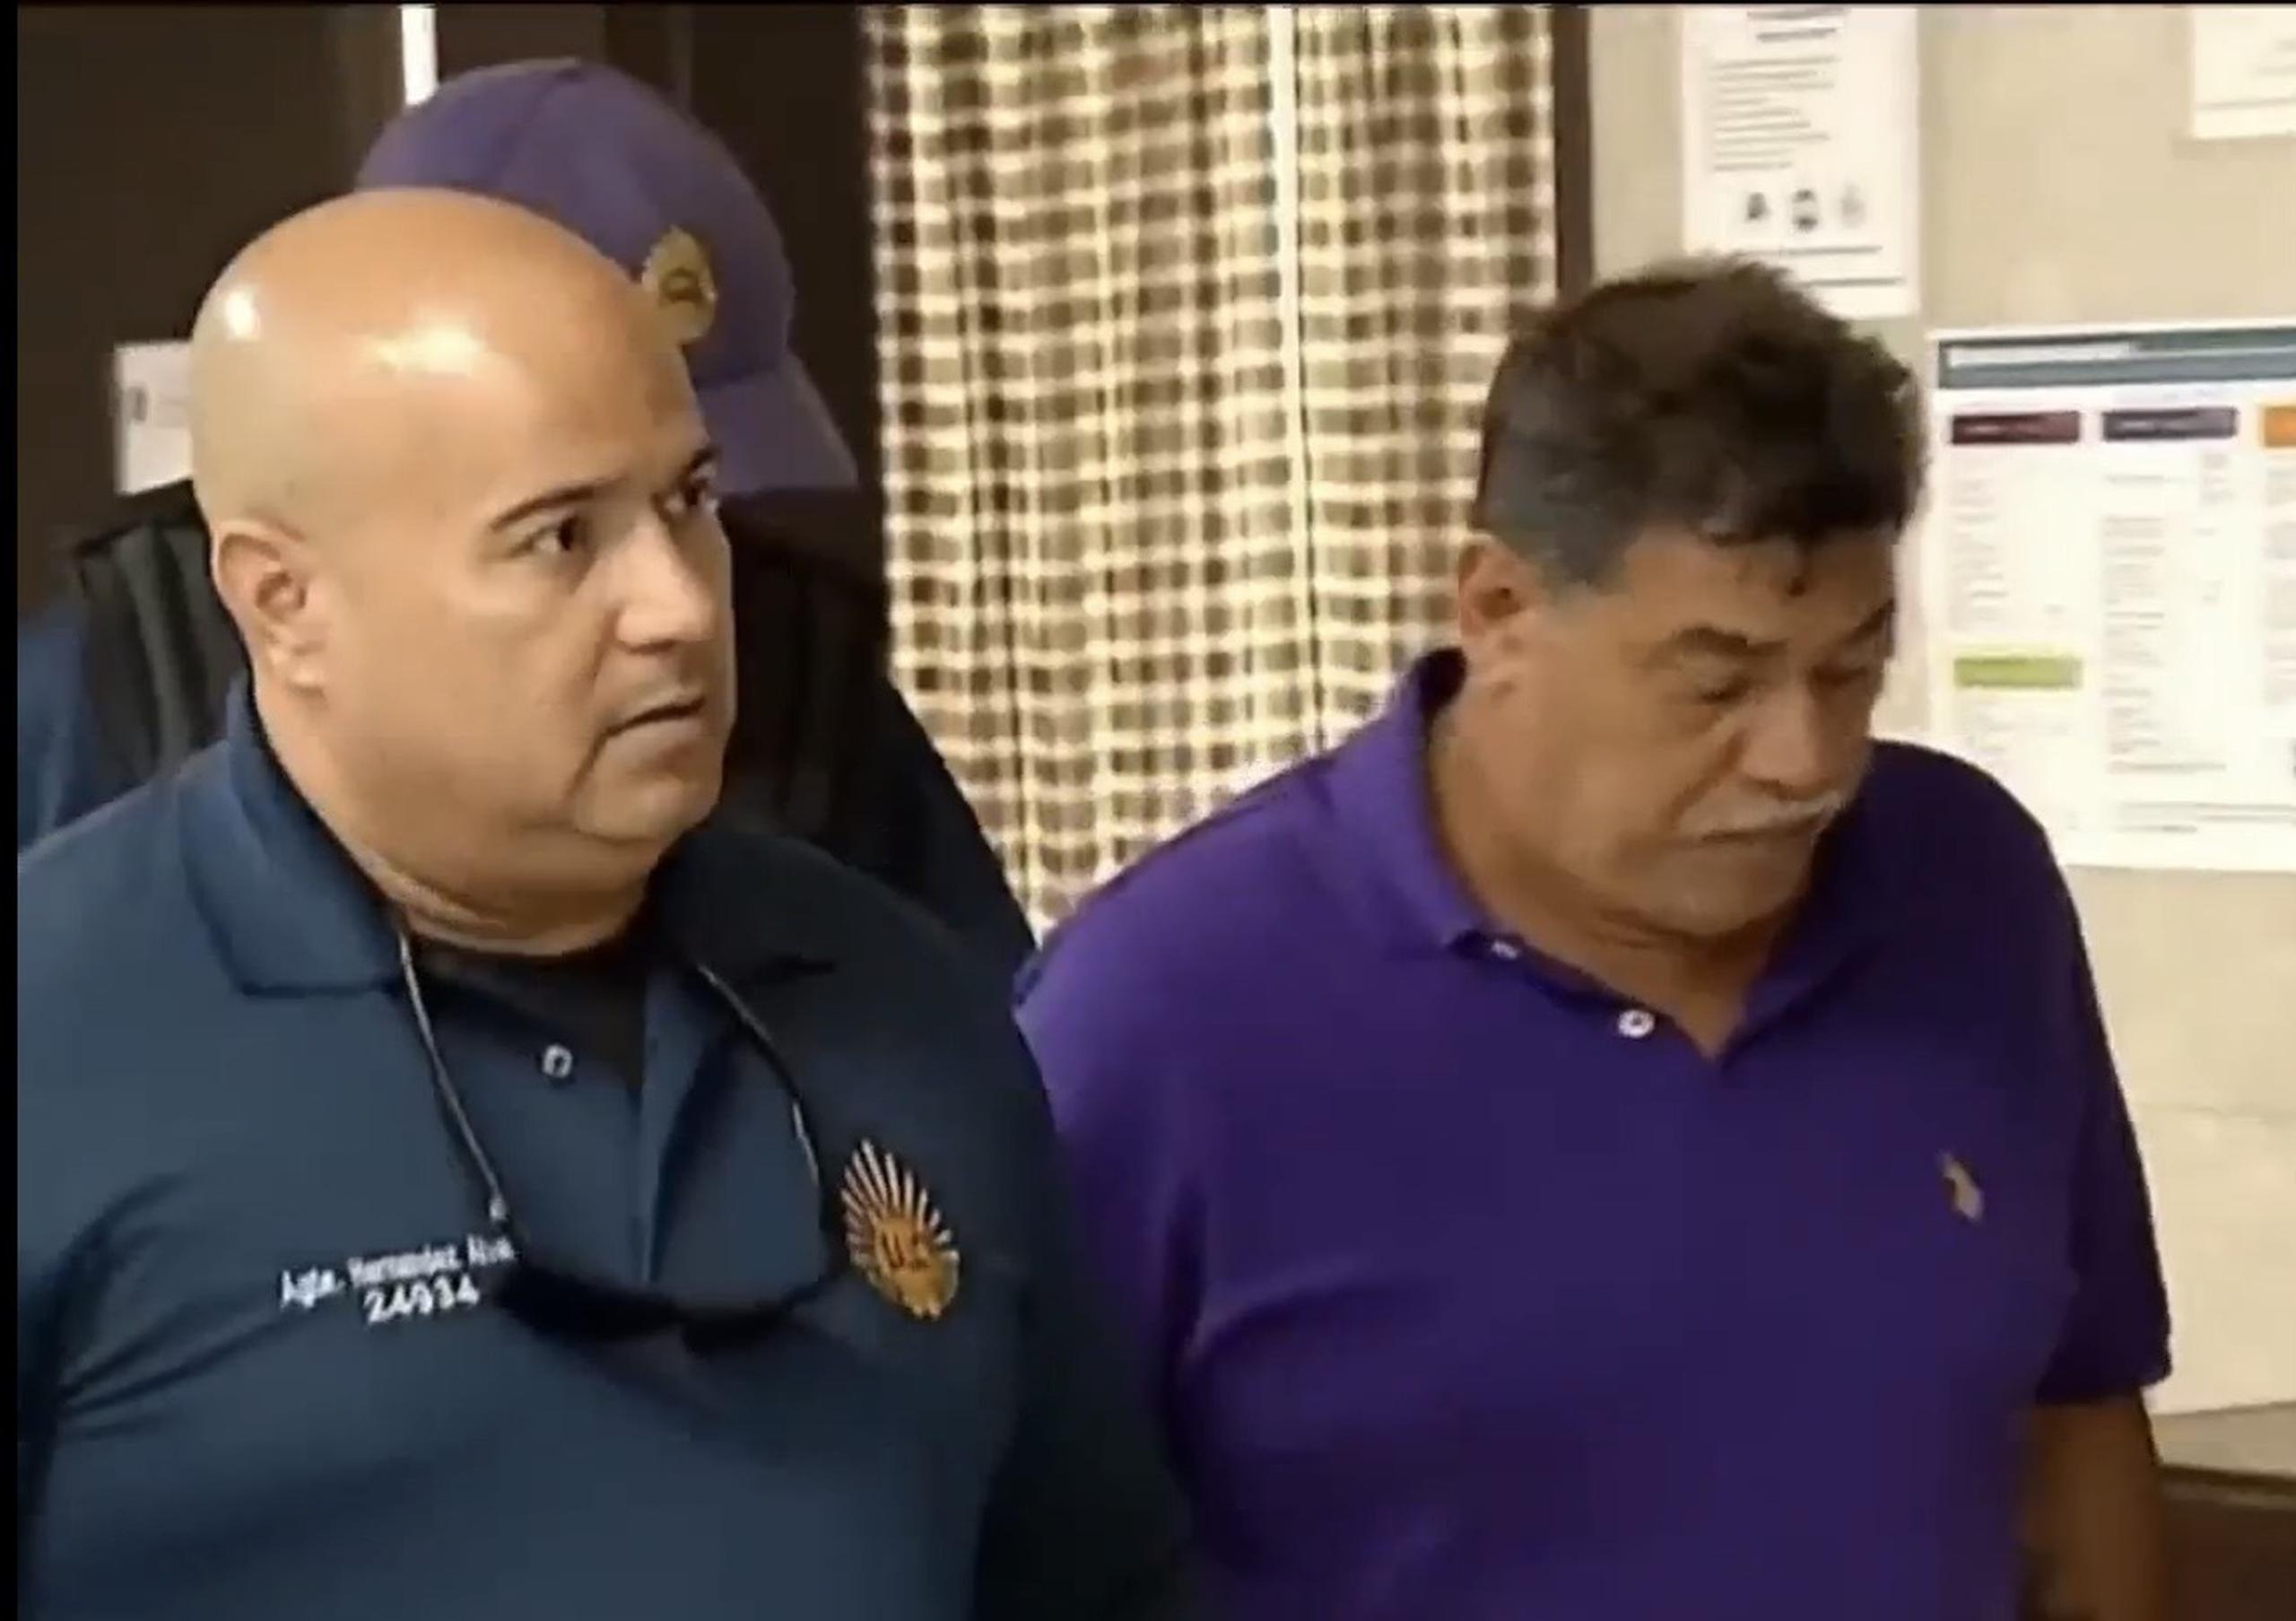 Manuel Ortiz, quien admitió ser el responsable de asesinar a Ada Luz Jiménez Rosario, enfrenta cargos por asesinato en modalidad de feminicidio, y violaciones a la Ley 54 y la Ley de Armas.